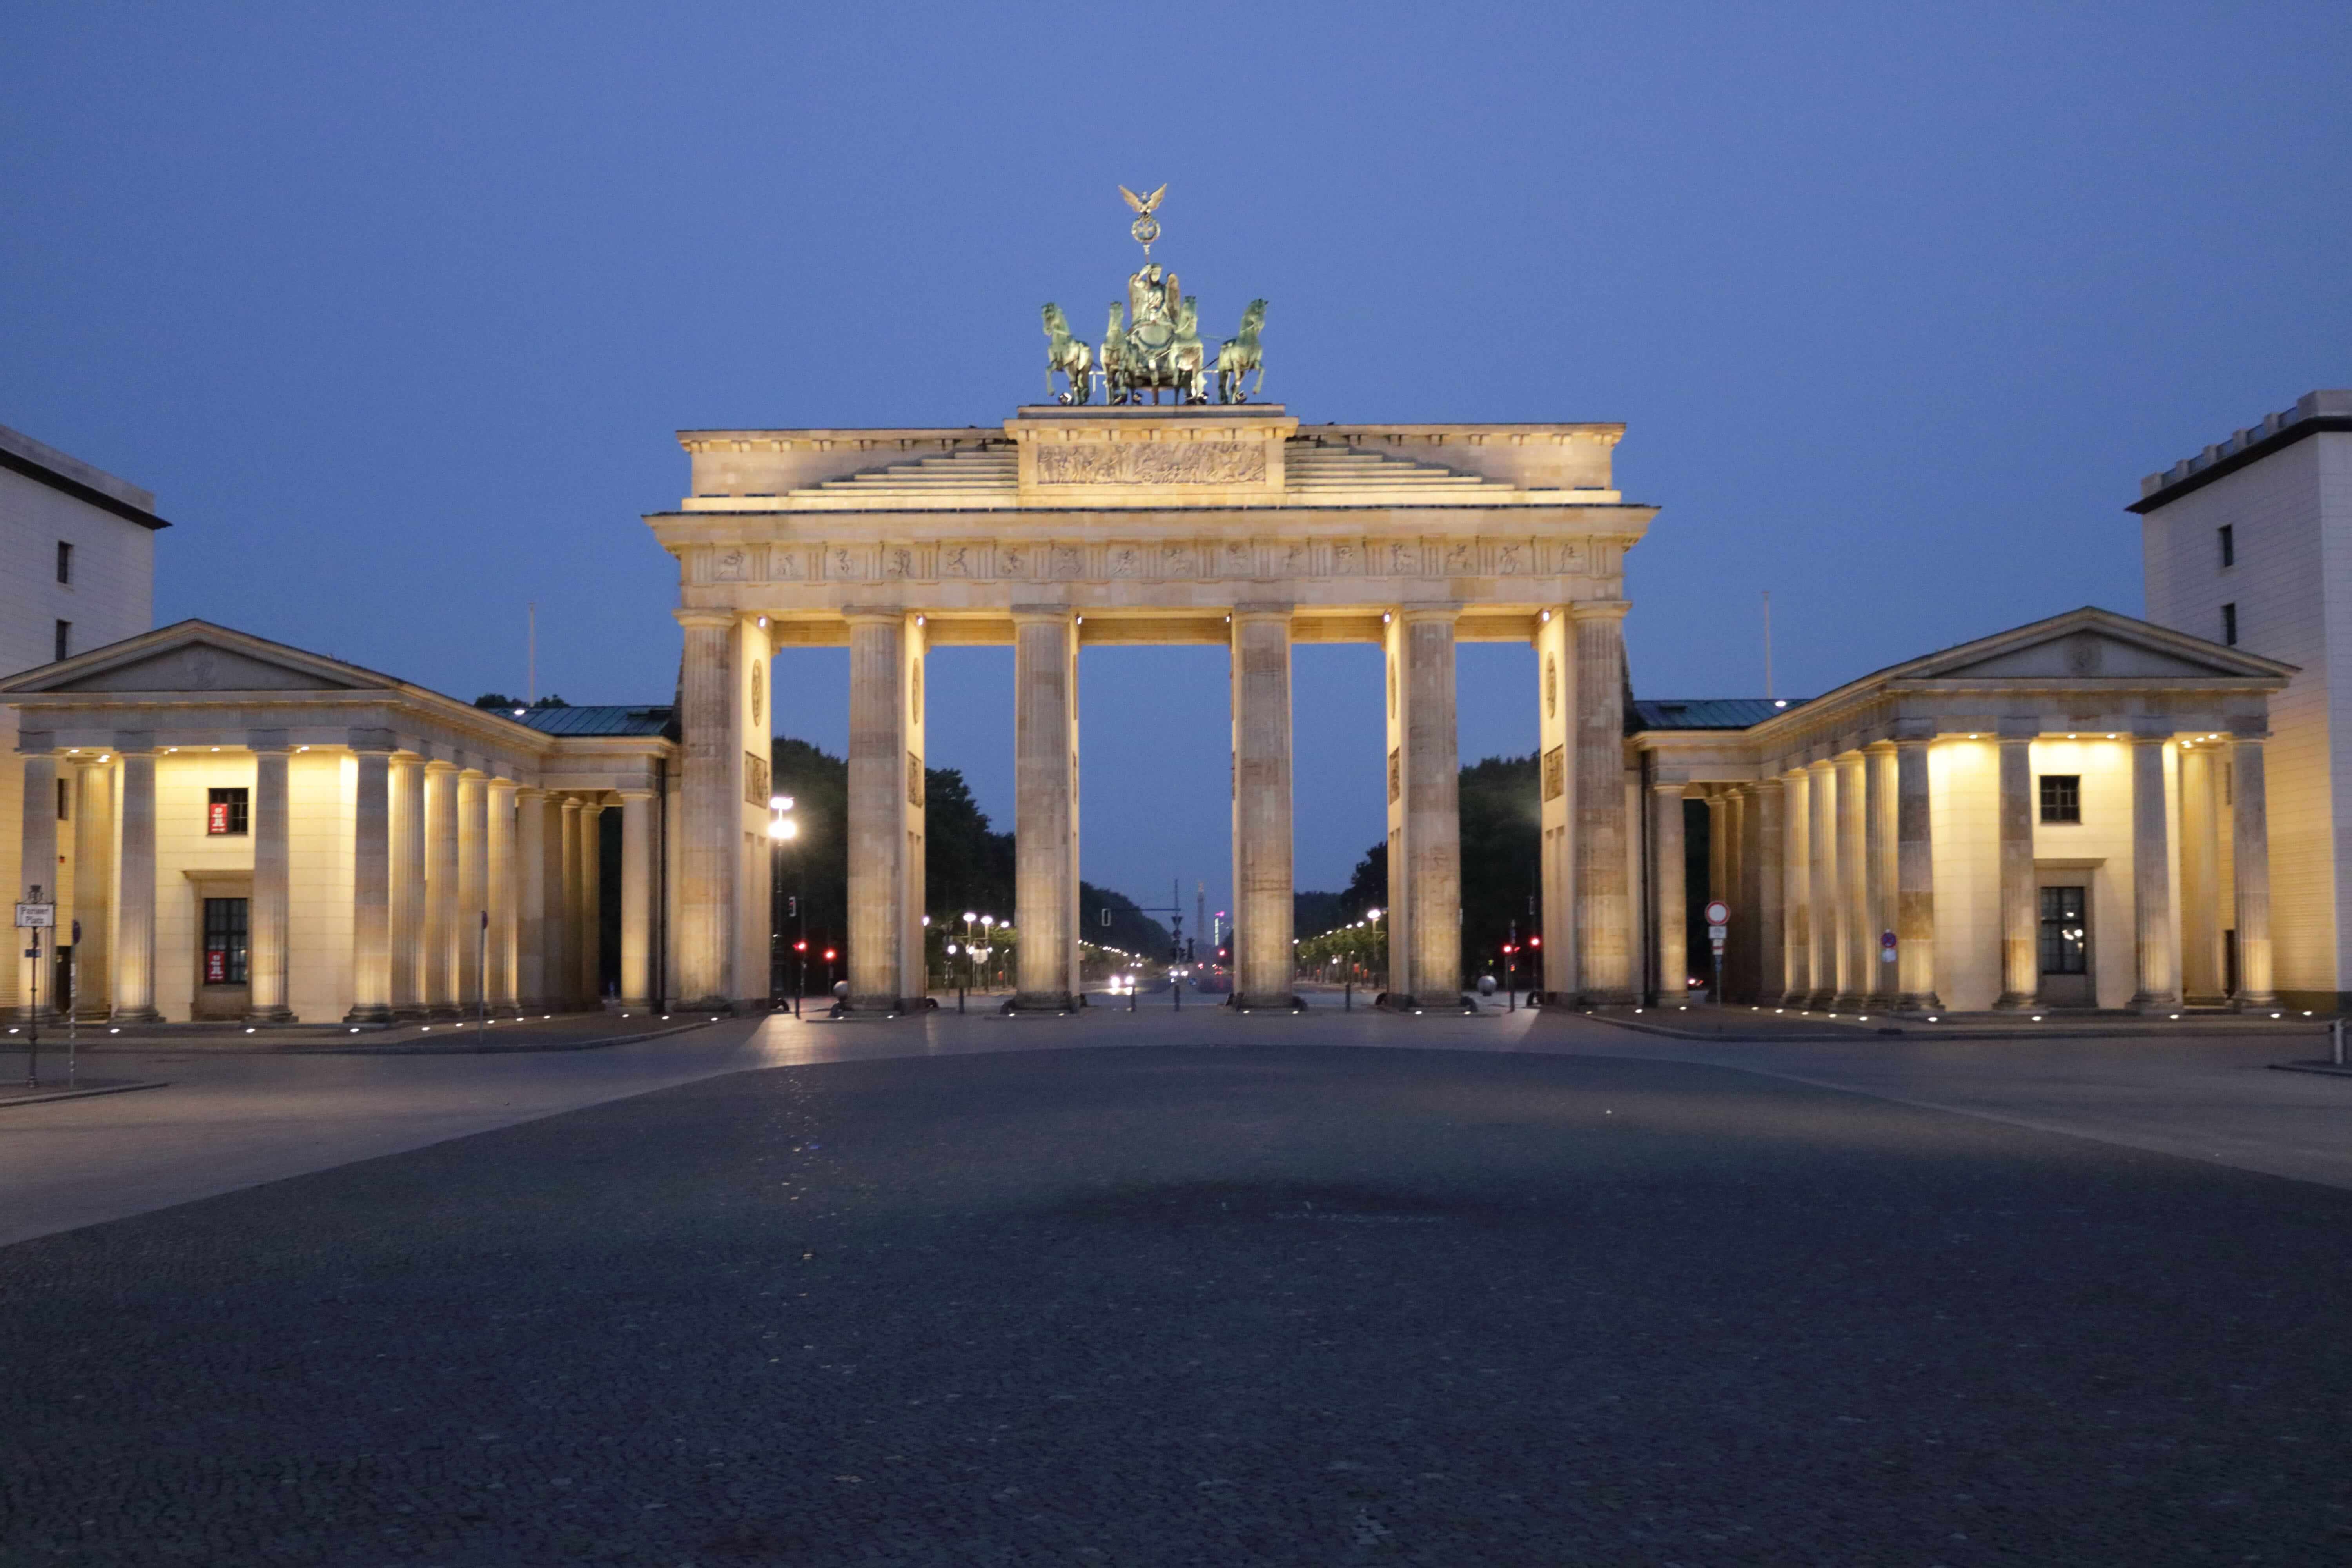  Das Brandenburger Tor in Berlin  erkunden mit Guidenex